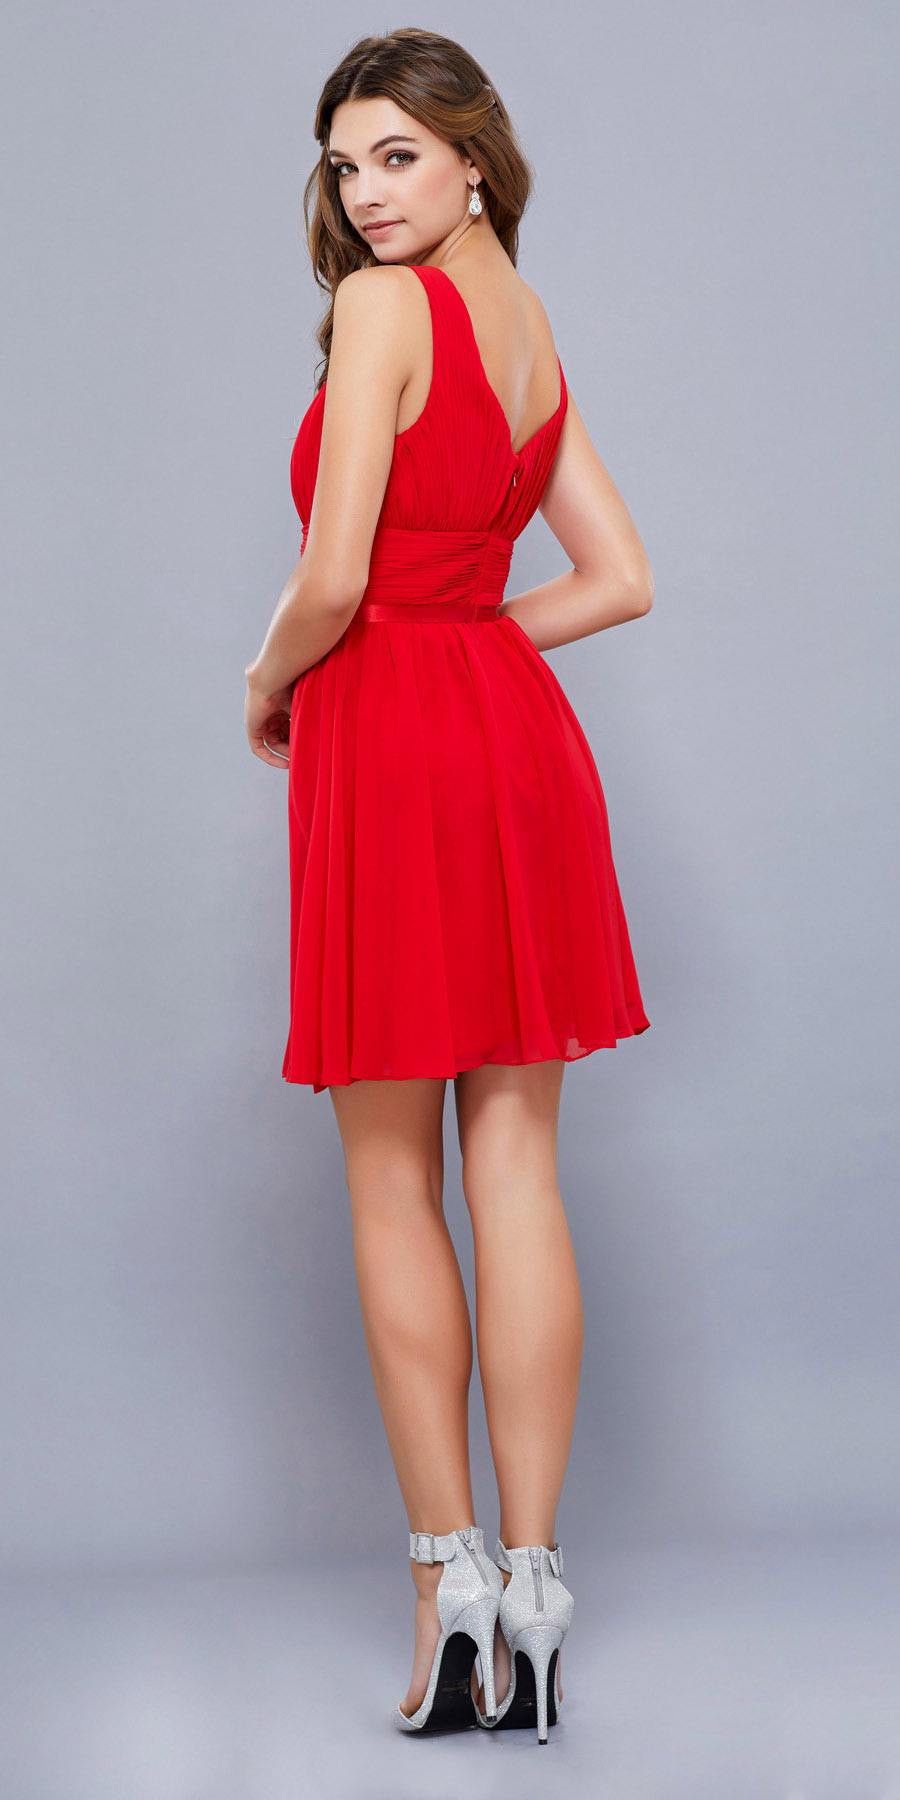 Ruched Sweetheart Neckline Short Cocktail Dress V-Shape Back Red